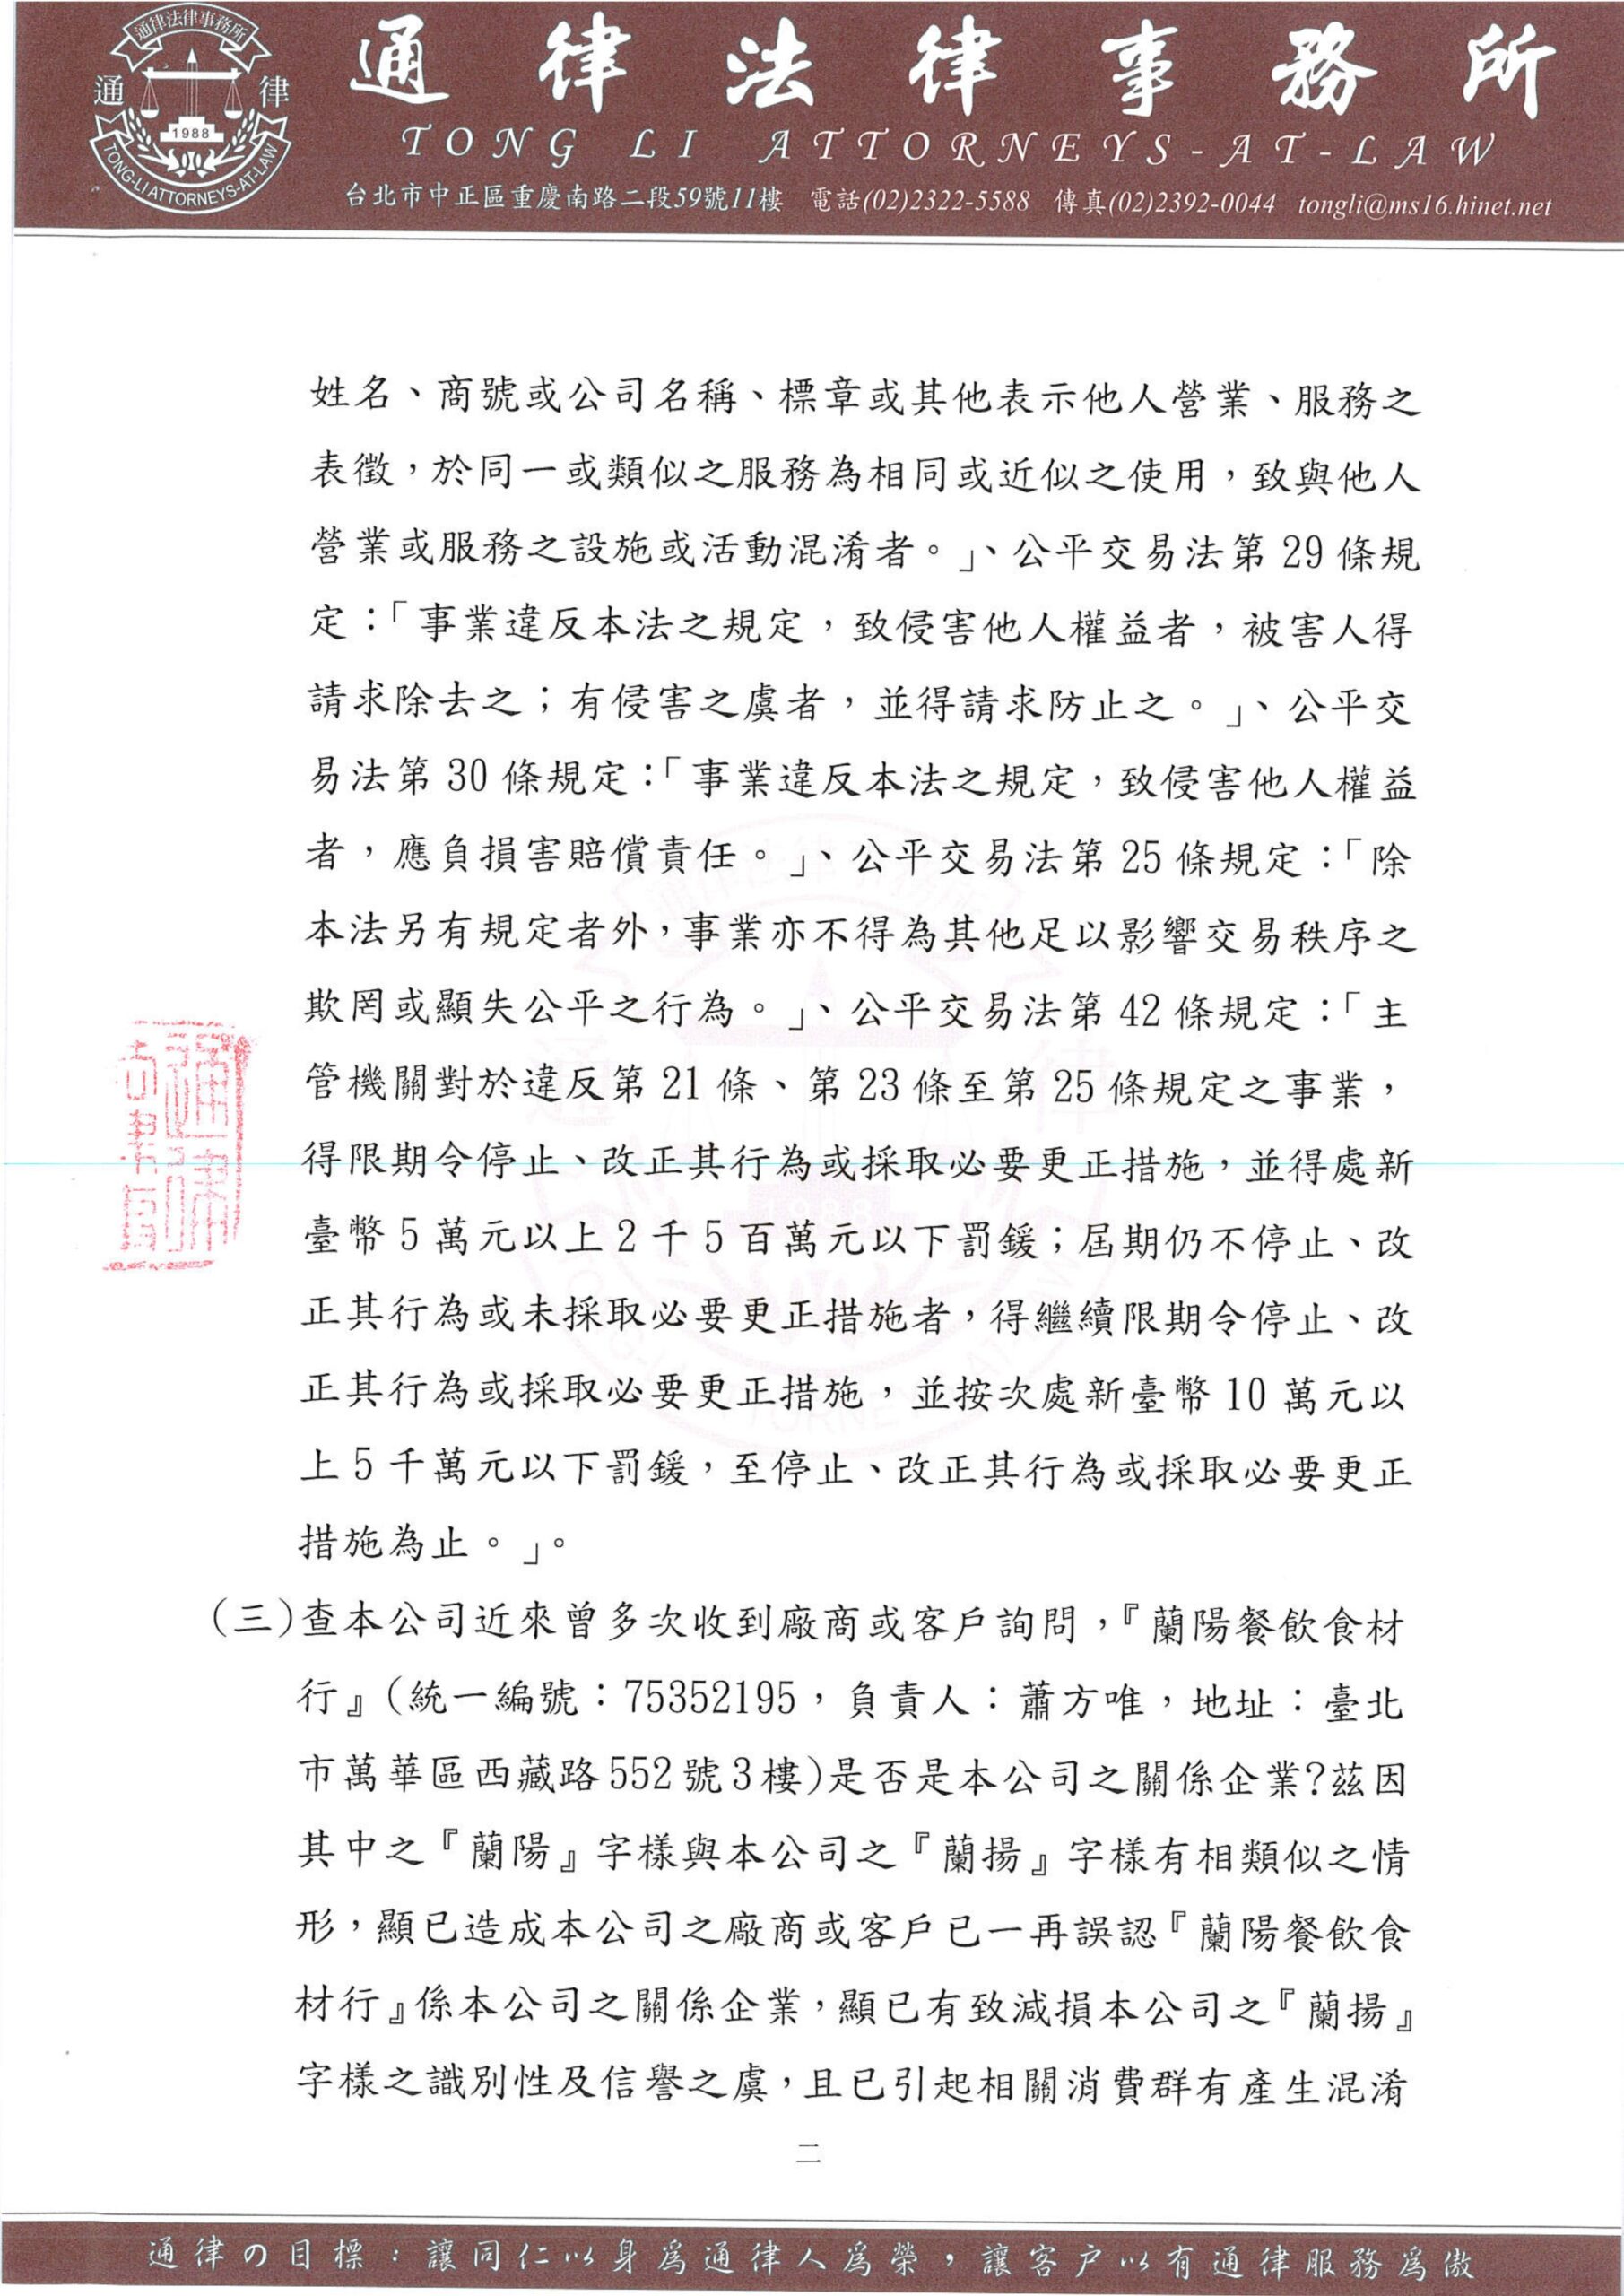 Lanyang Catering Materials Co., Ltd._Avvocato Lettera 230331 Ricevuta_pagina-0002